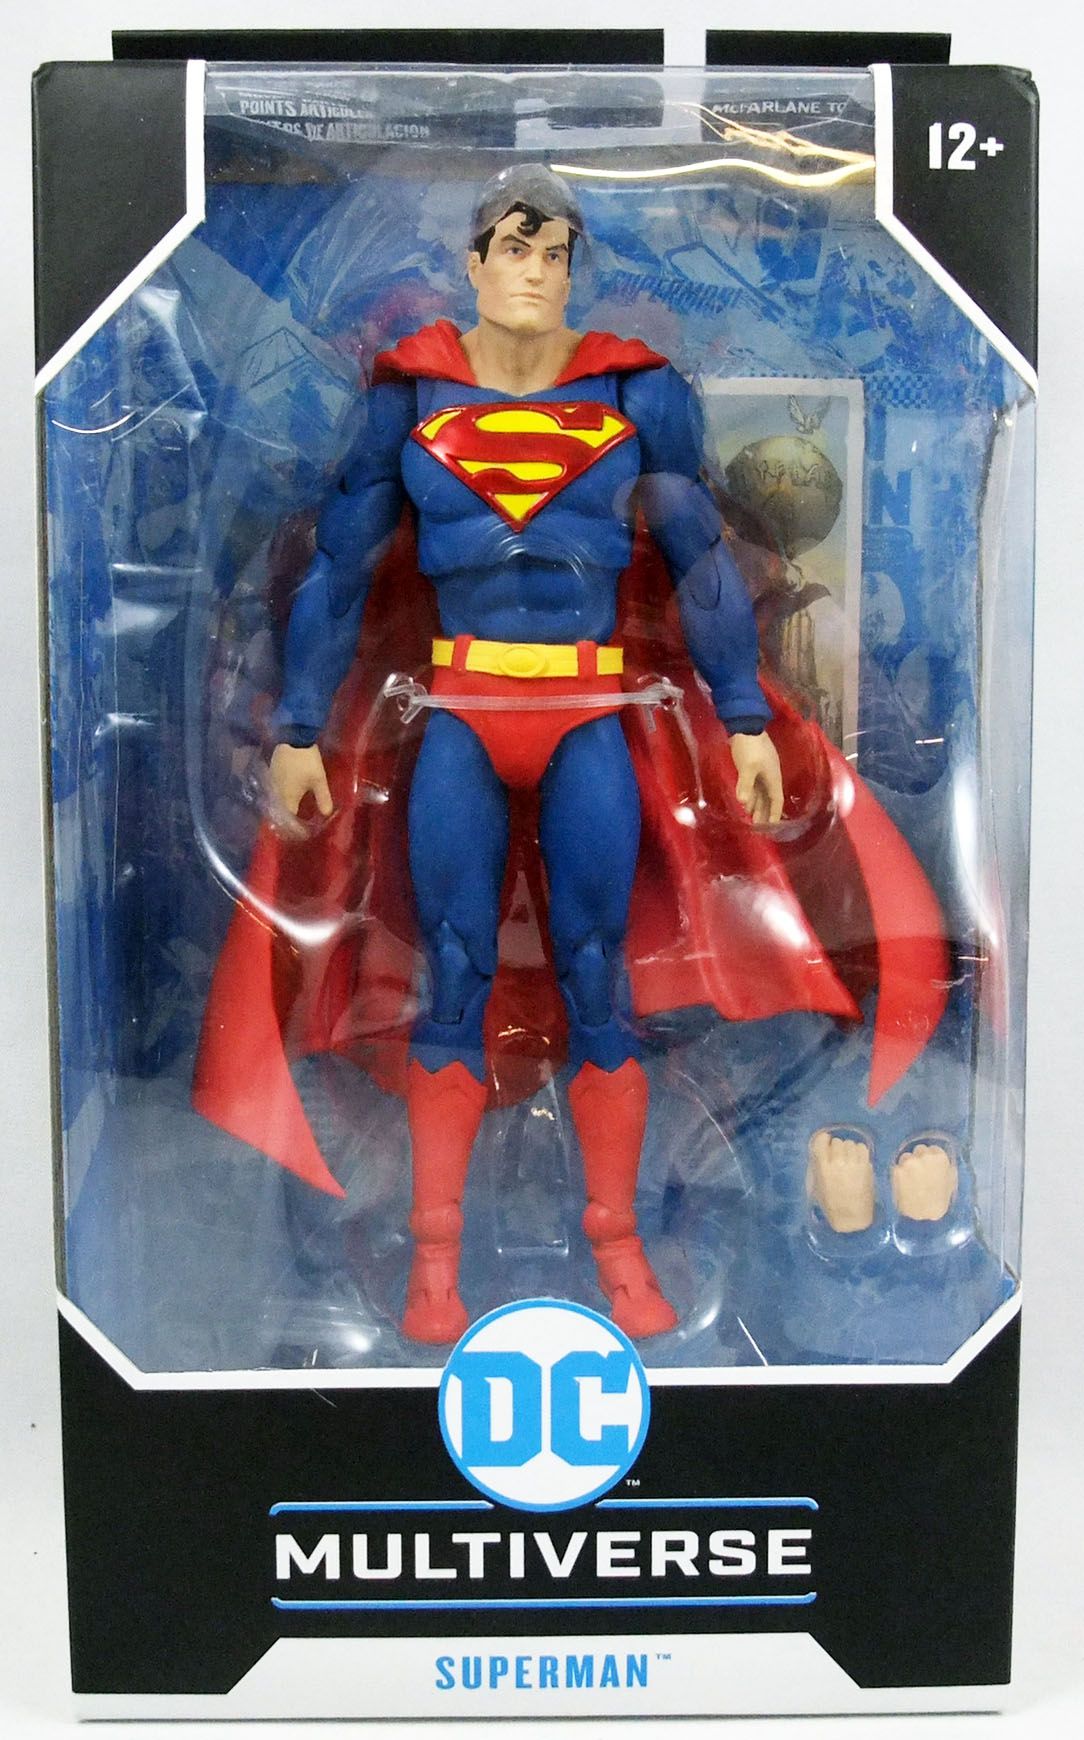 McFarlane Toys Superman Action Comics #1000 Action Figure 7" DC Multiverse 